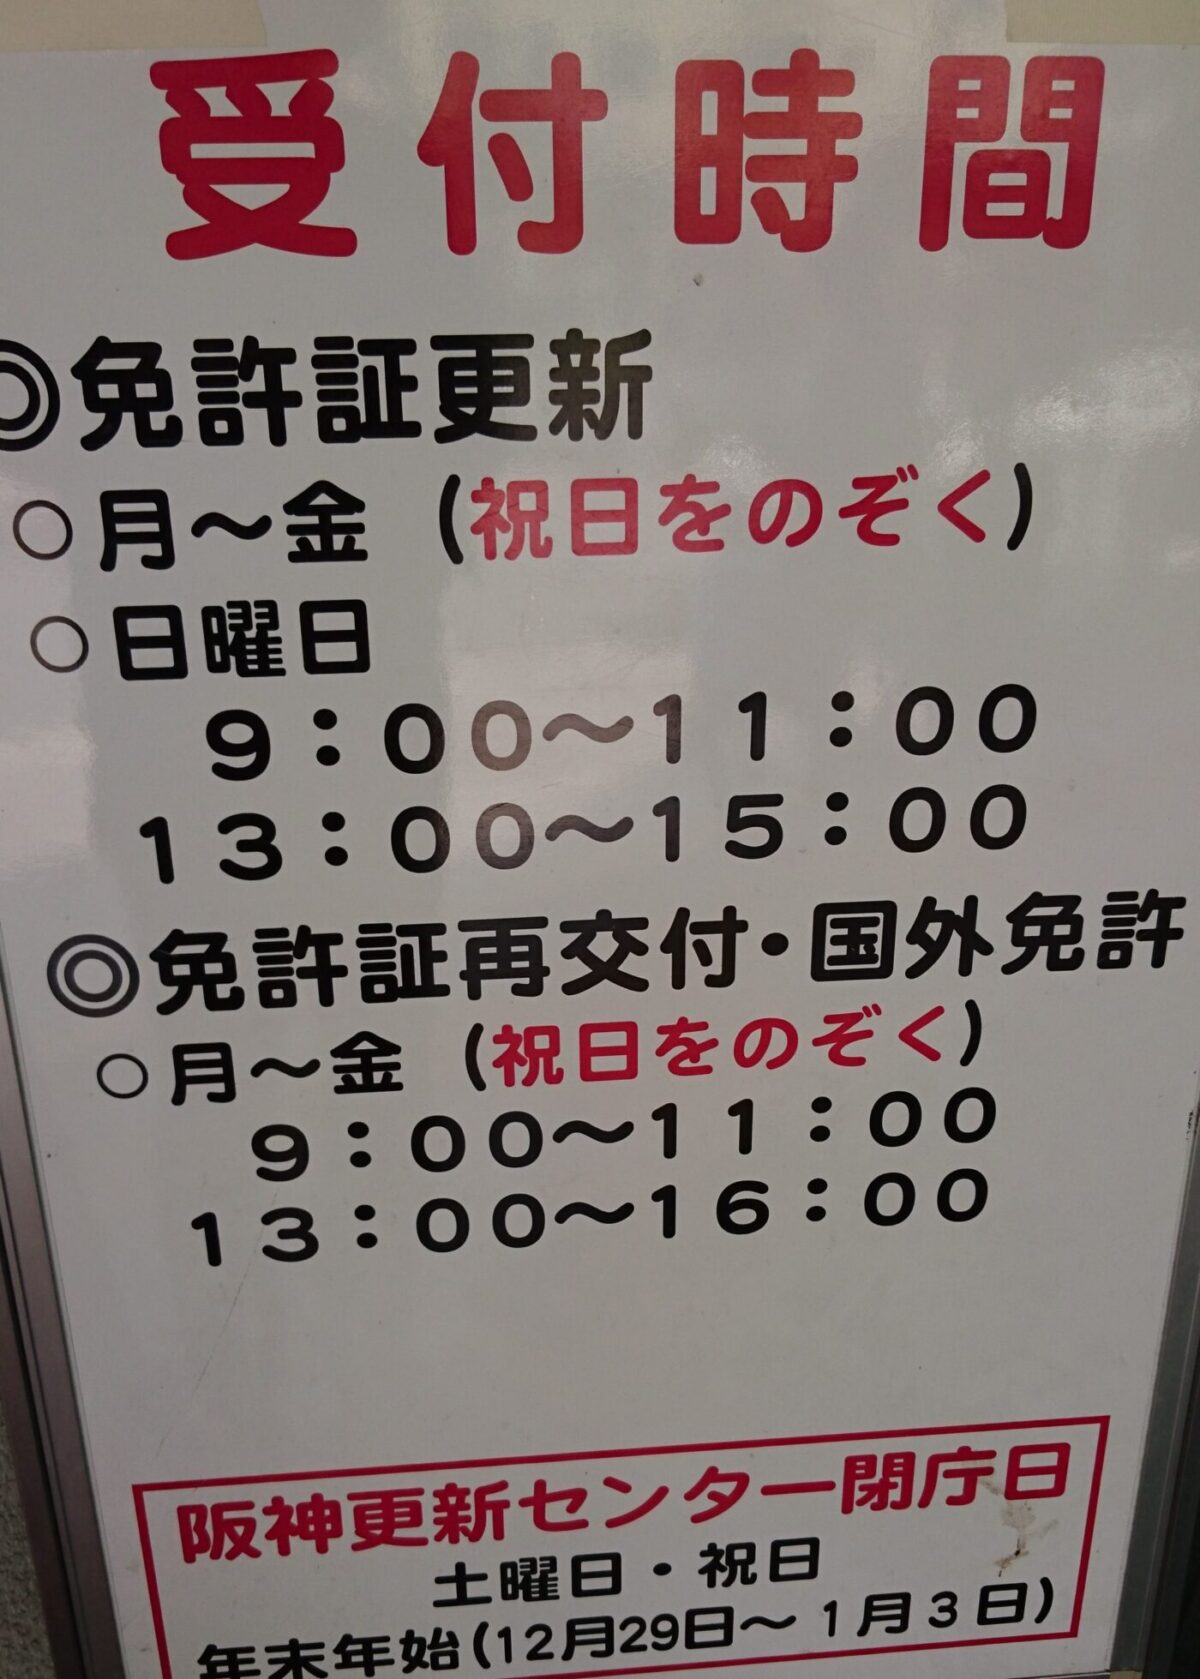 阪神免許更新センターの朝混雑するので時間ずらすといいかも お気楽オヤジの雑記帳